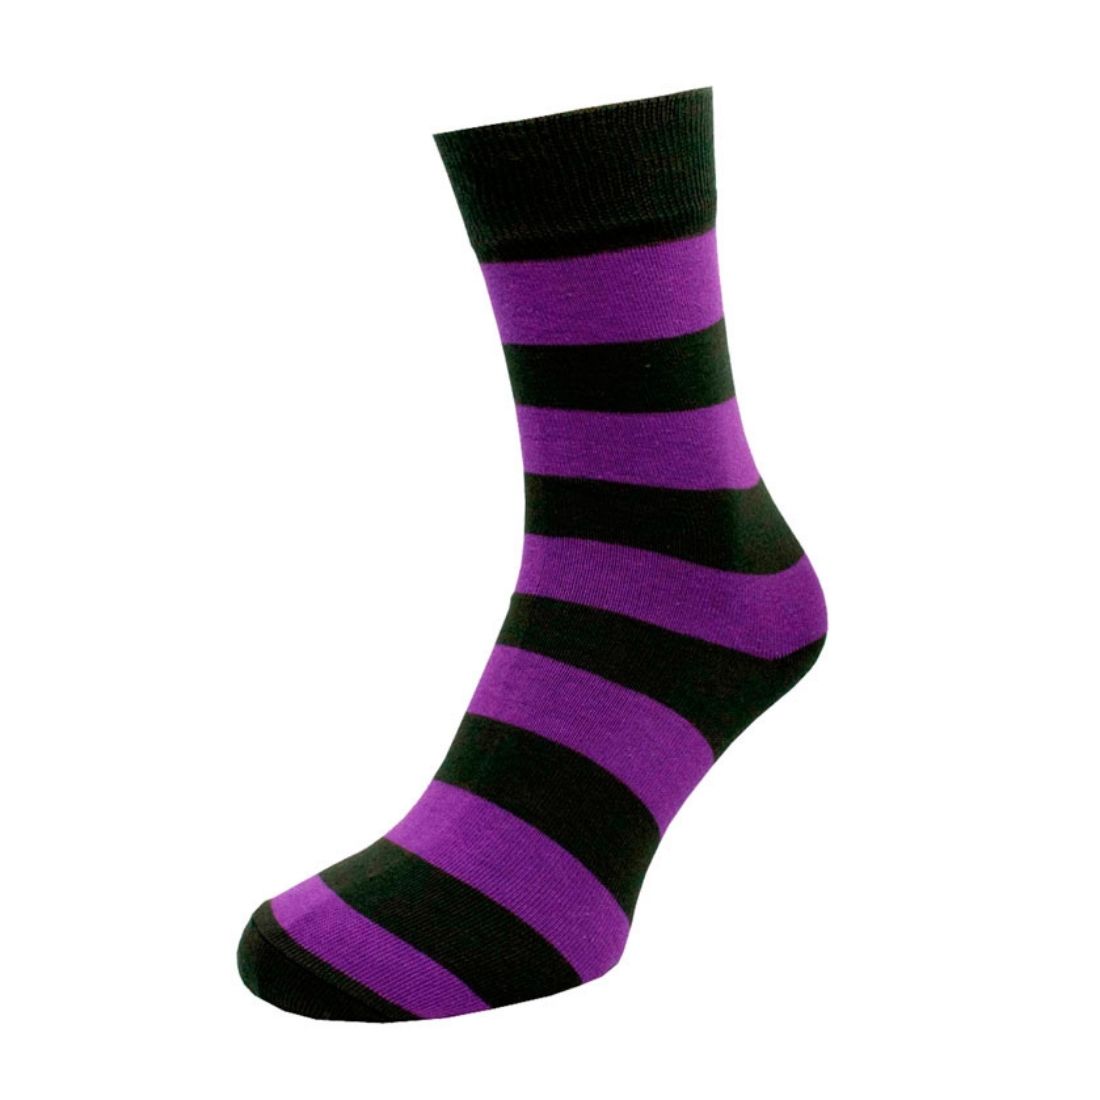 Носки мужские цветные из хлопка, фиолетовая полоска MansSet